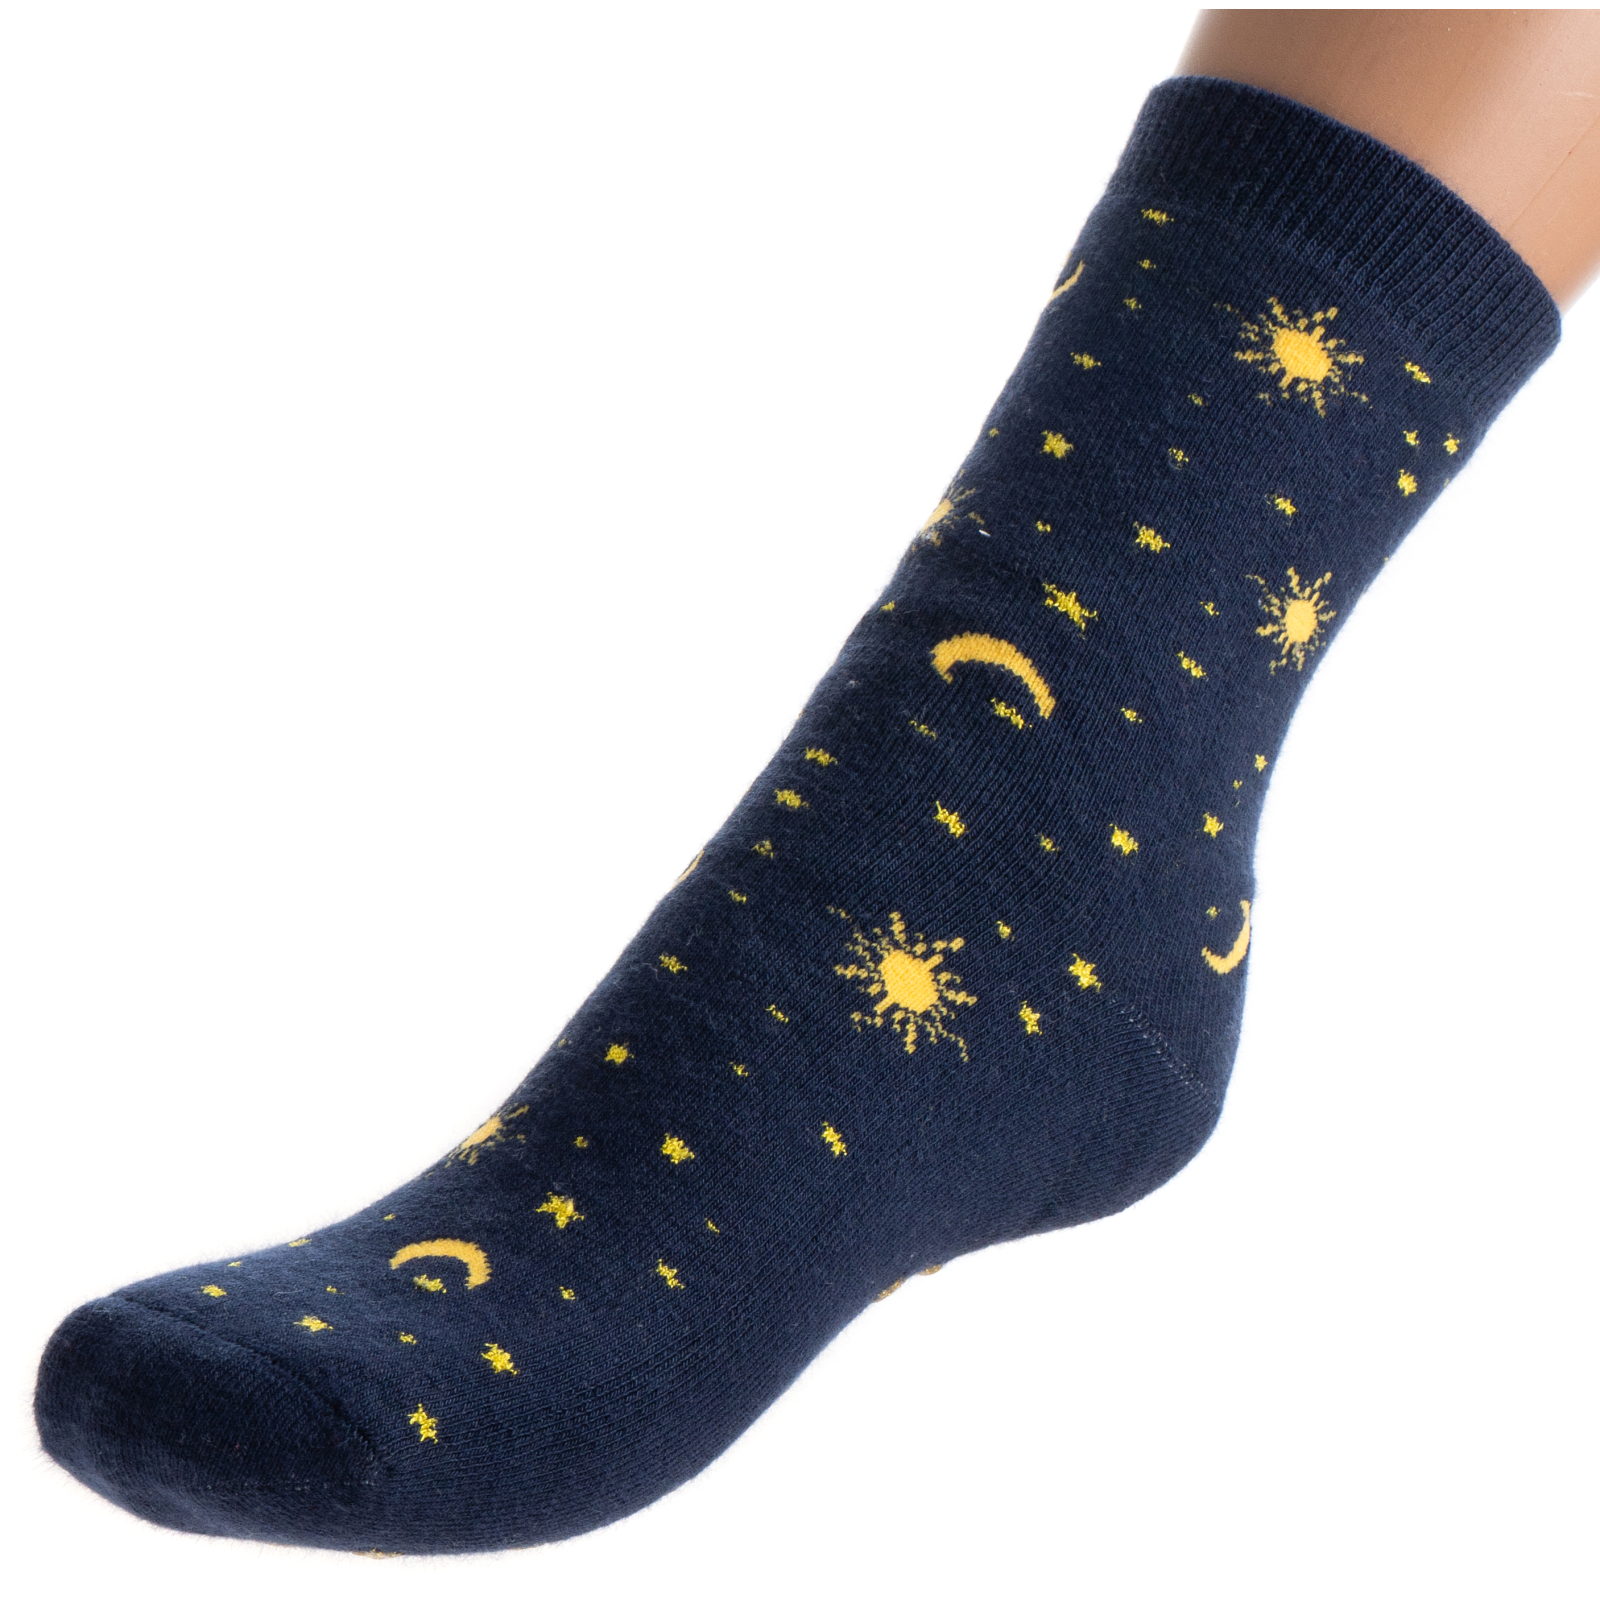 Носки детские Bross махровые со звездочками (10196-4-blue)